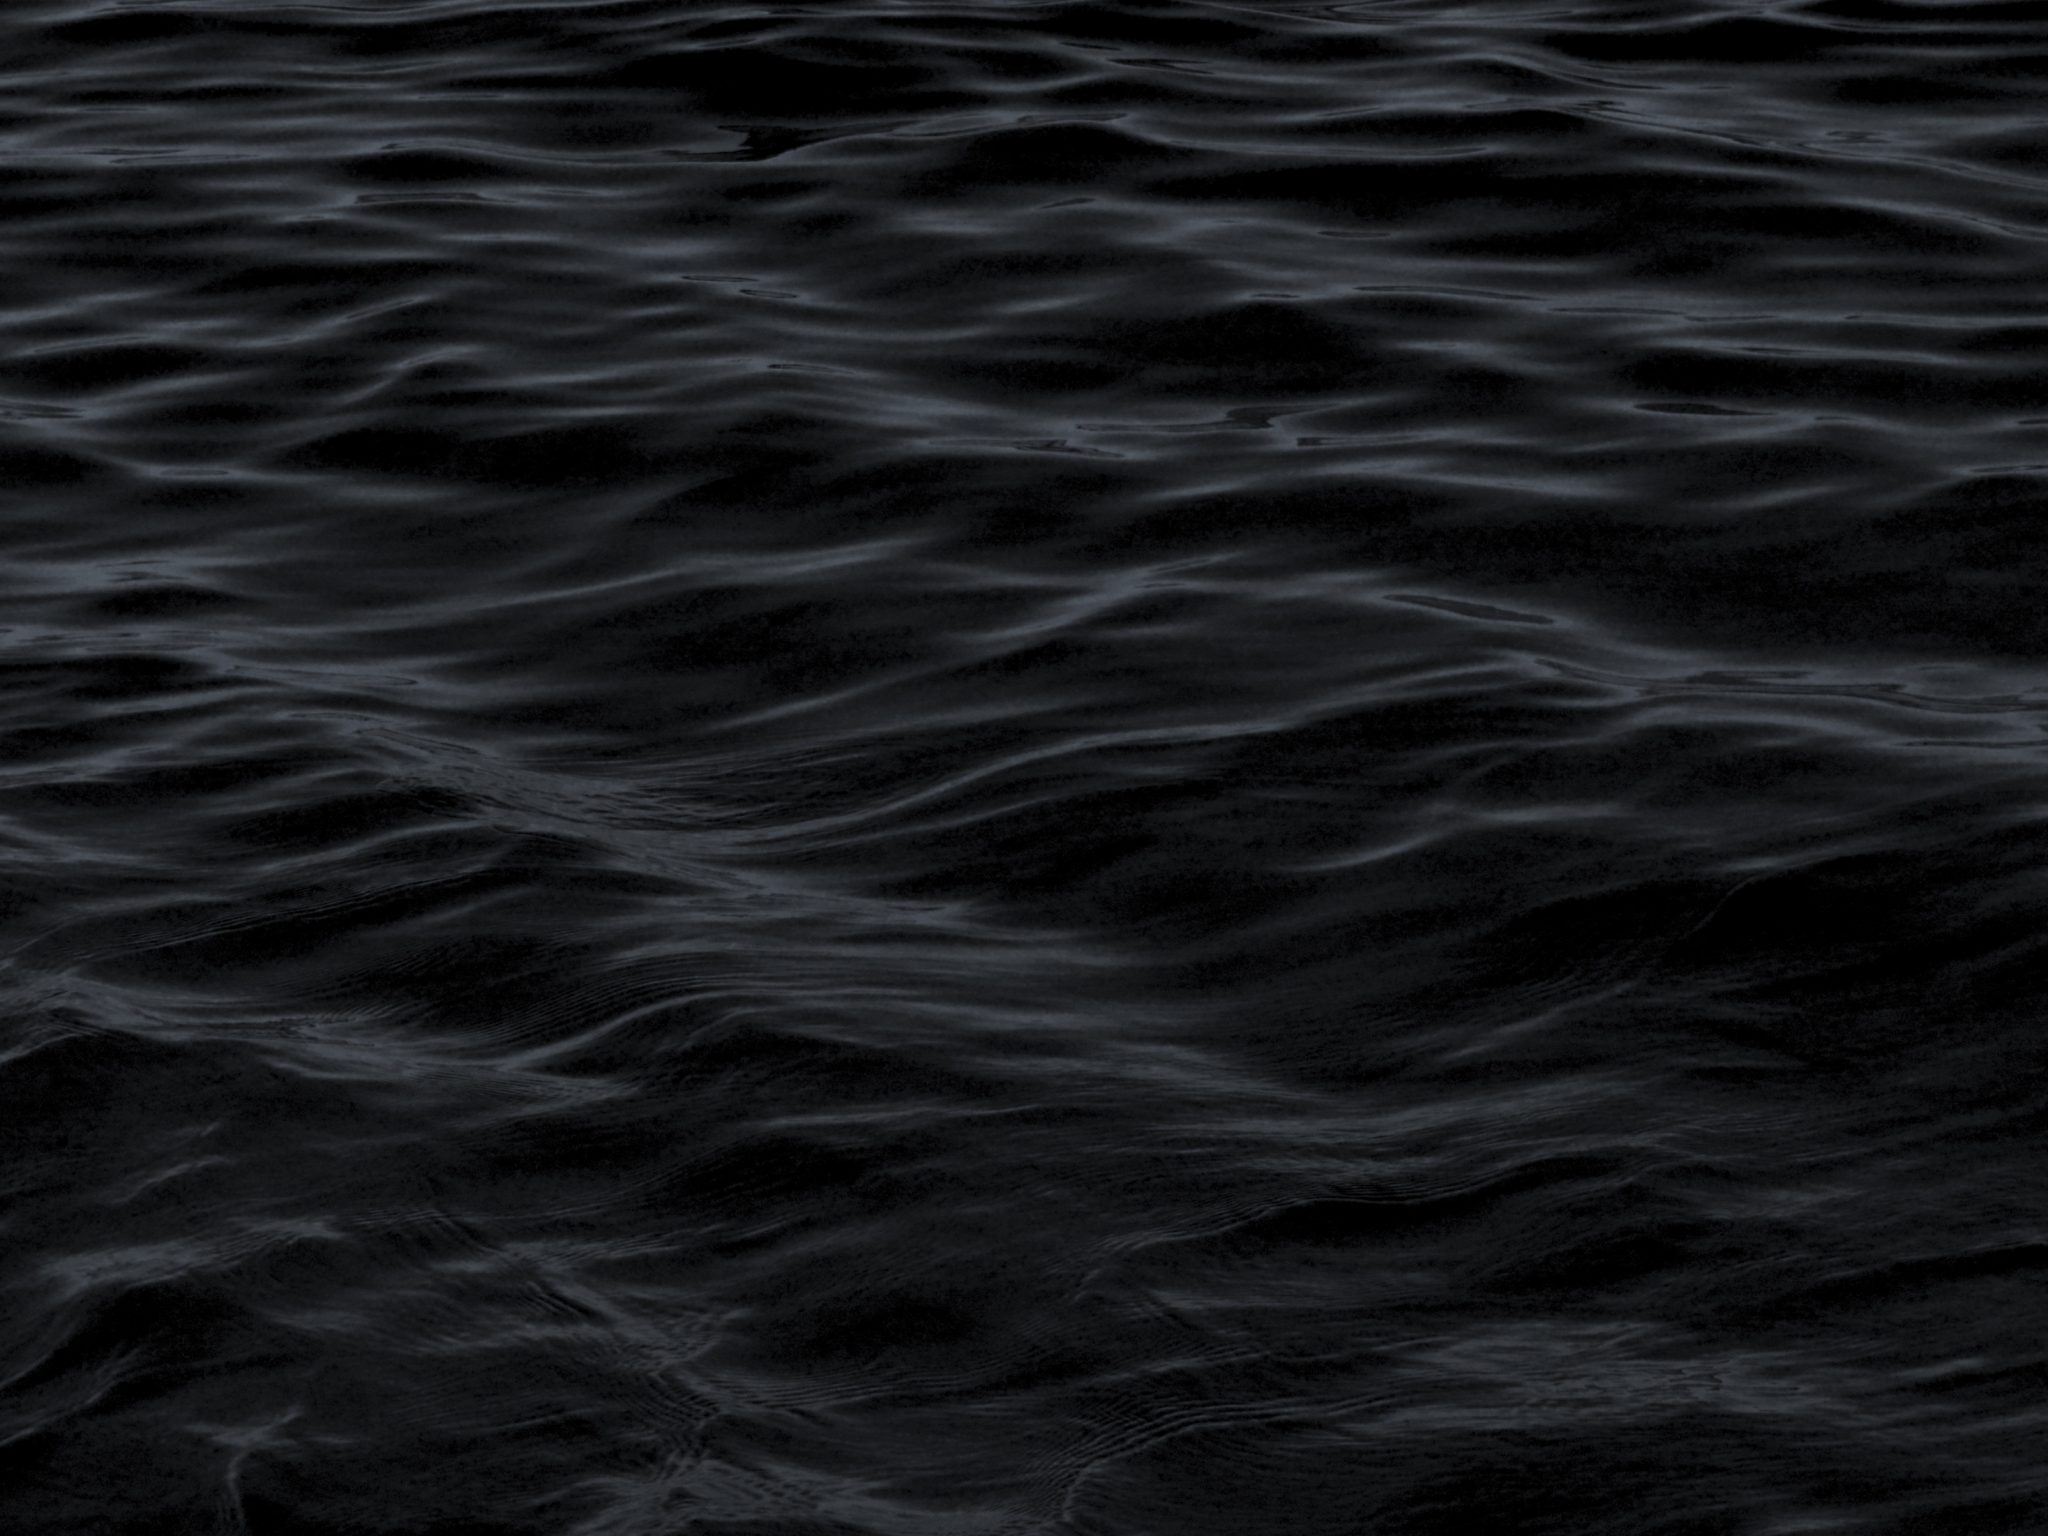 2048x1536 wallpaper Dark Water Waves Sea Pattern iPad Wallpaper 2048x1536 pixels resolution